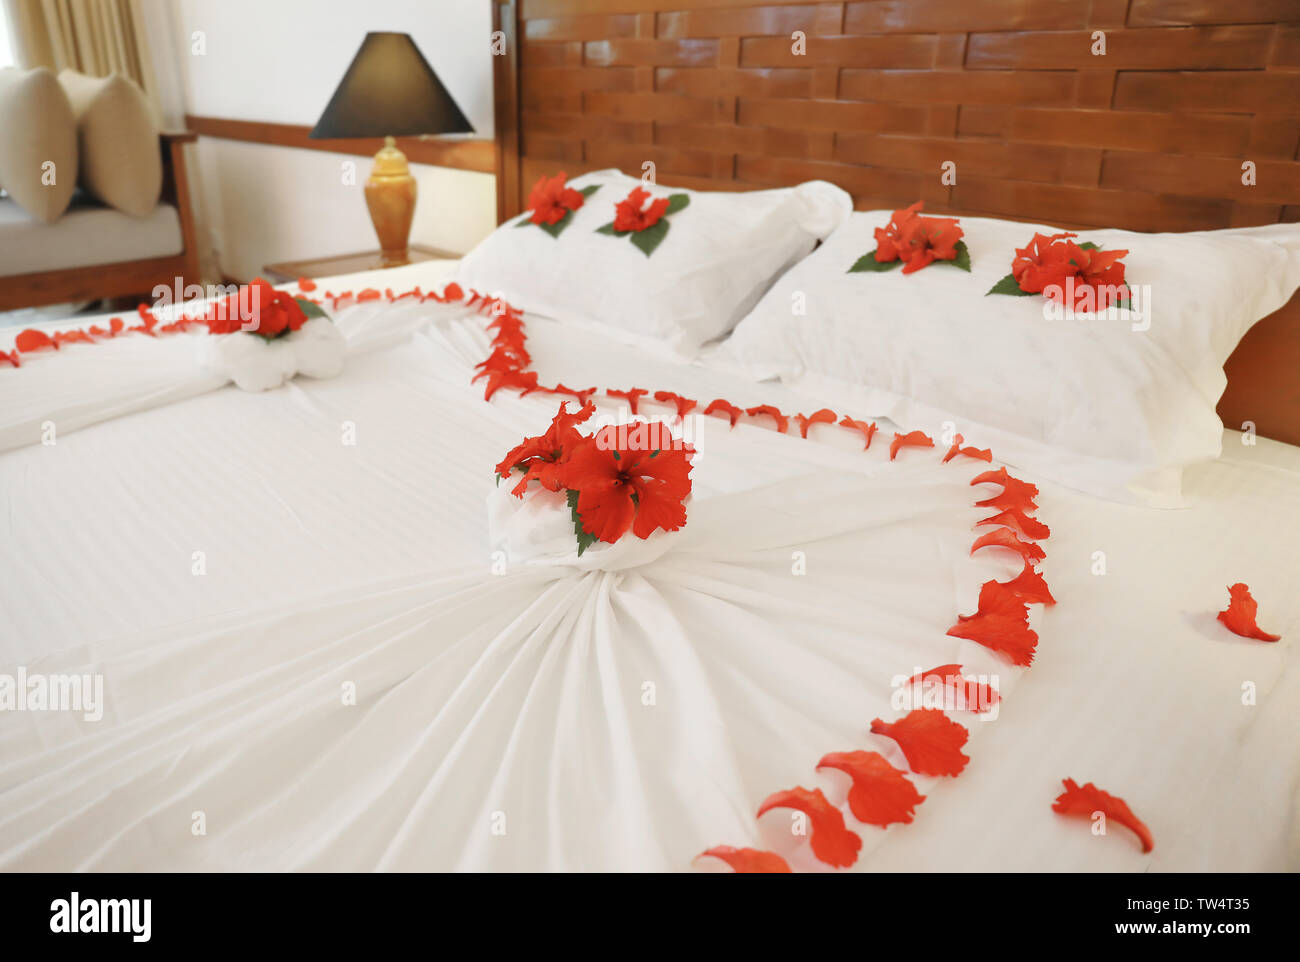 Bett mit Blumen im Hotel Zimmer dekoriert Stockfotografie - Alamy